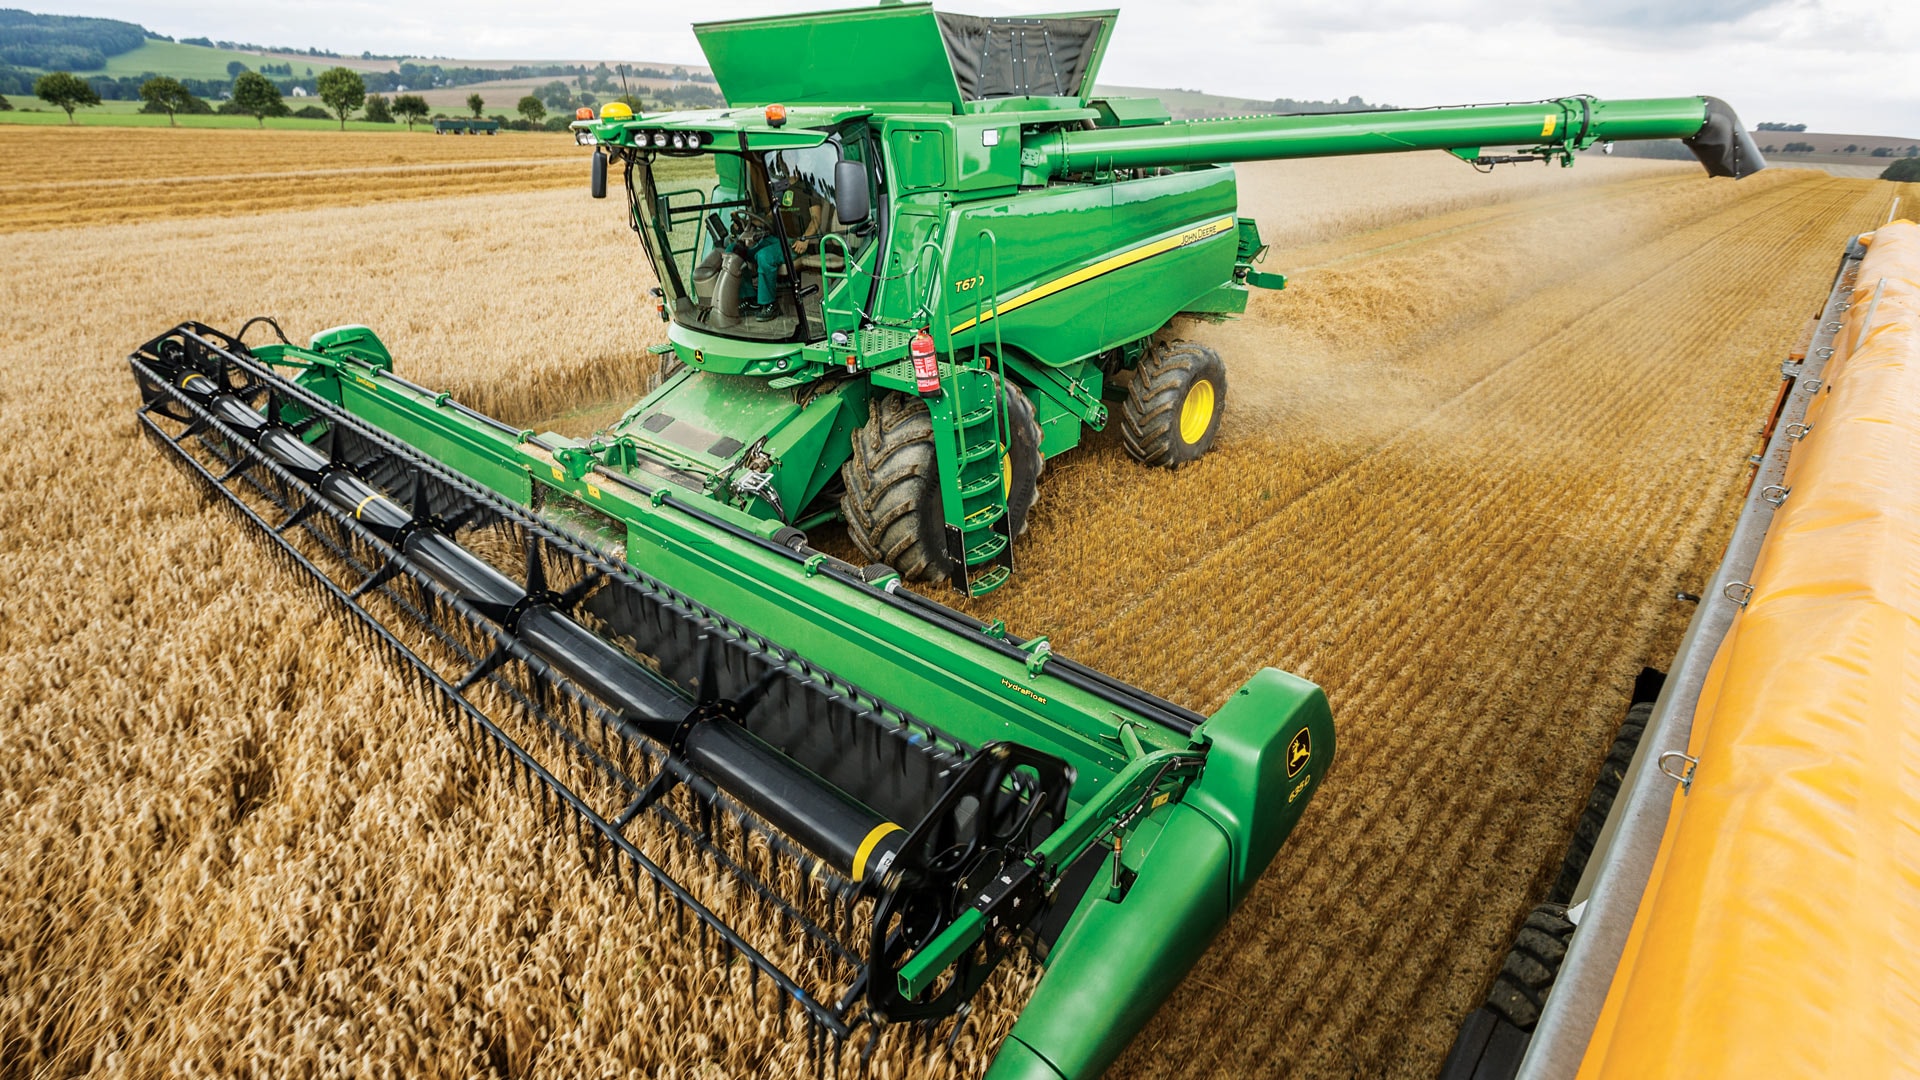 John Deere T-Series combine harvester harvesting crops.